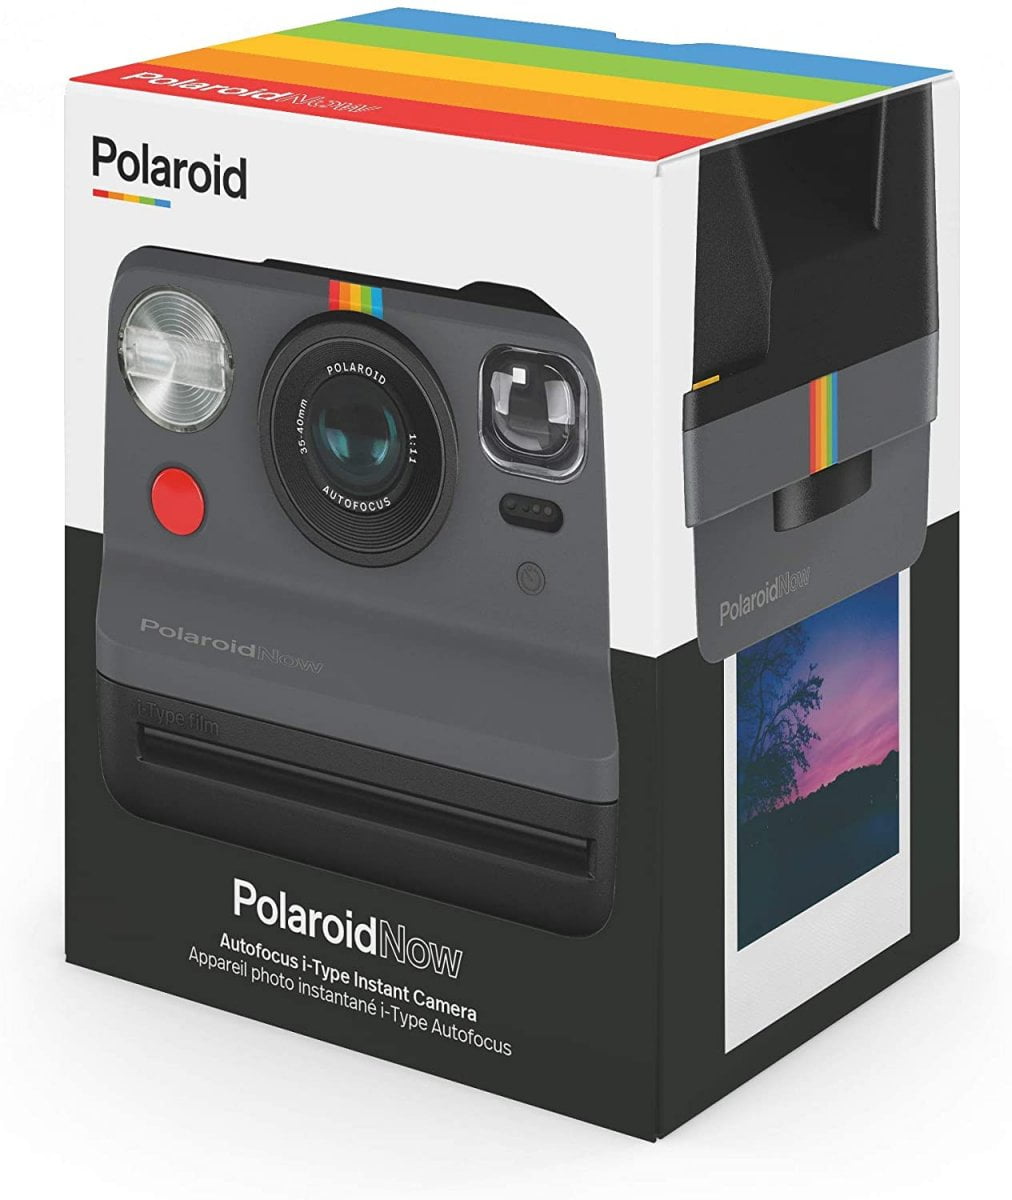  Appareil Photo instantané - Polaroid Now i-Type